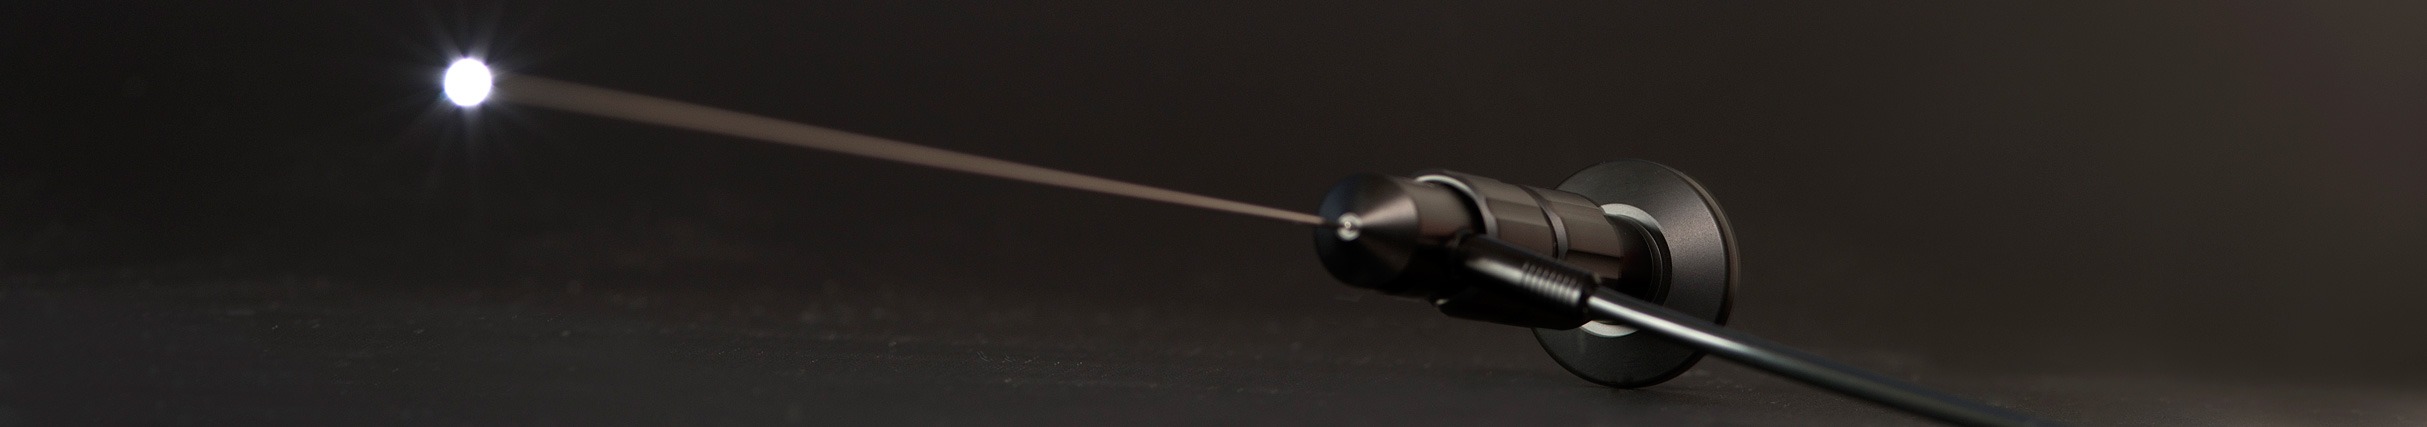 Mikro Endoskop mit starrem Schaft für verlustfreie Bildwiedergabe